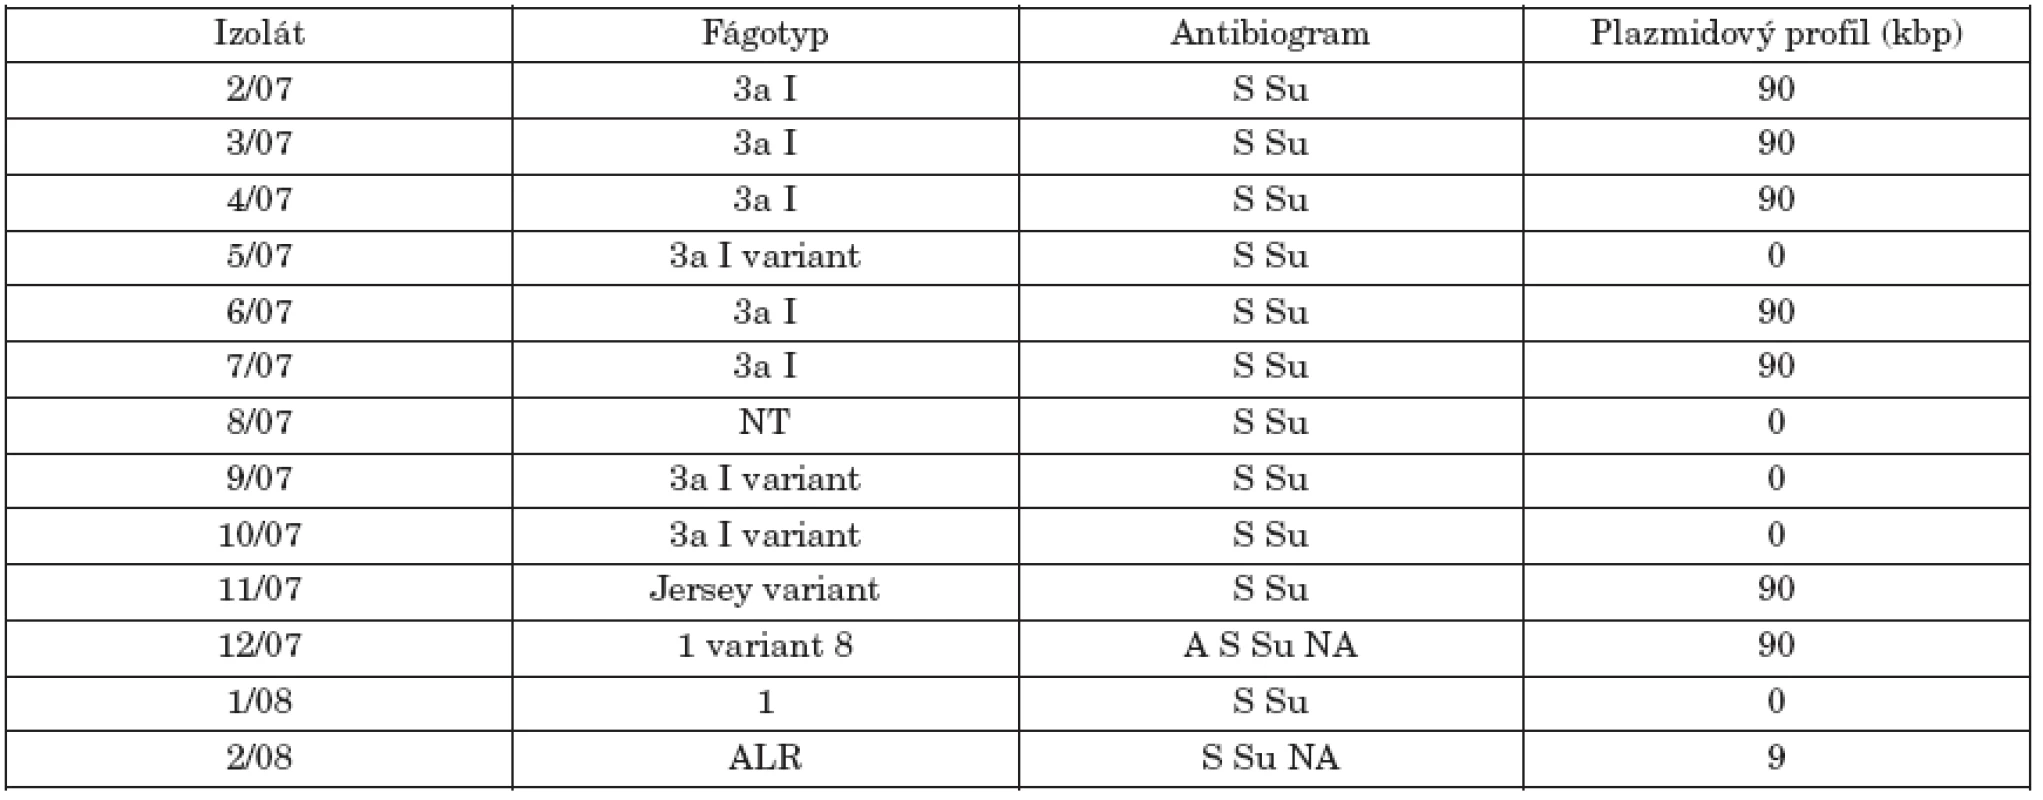 Fágotyp, citlivosť na antibiotiká a plazmidový profil kmeňov S. Paratyphi B dT+ (S. Java).
Table 1. Phage types, antimicrobial susceptibility and plasmid profiles of strains of S. Paratyphi B dT+ (S. Java)